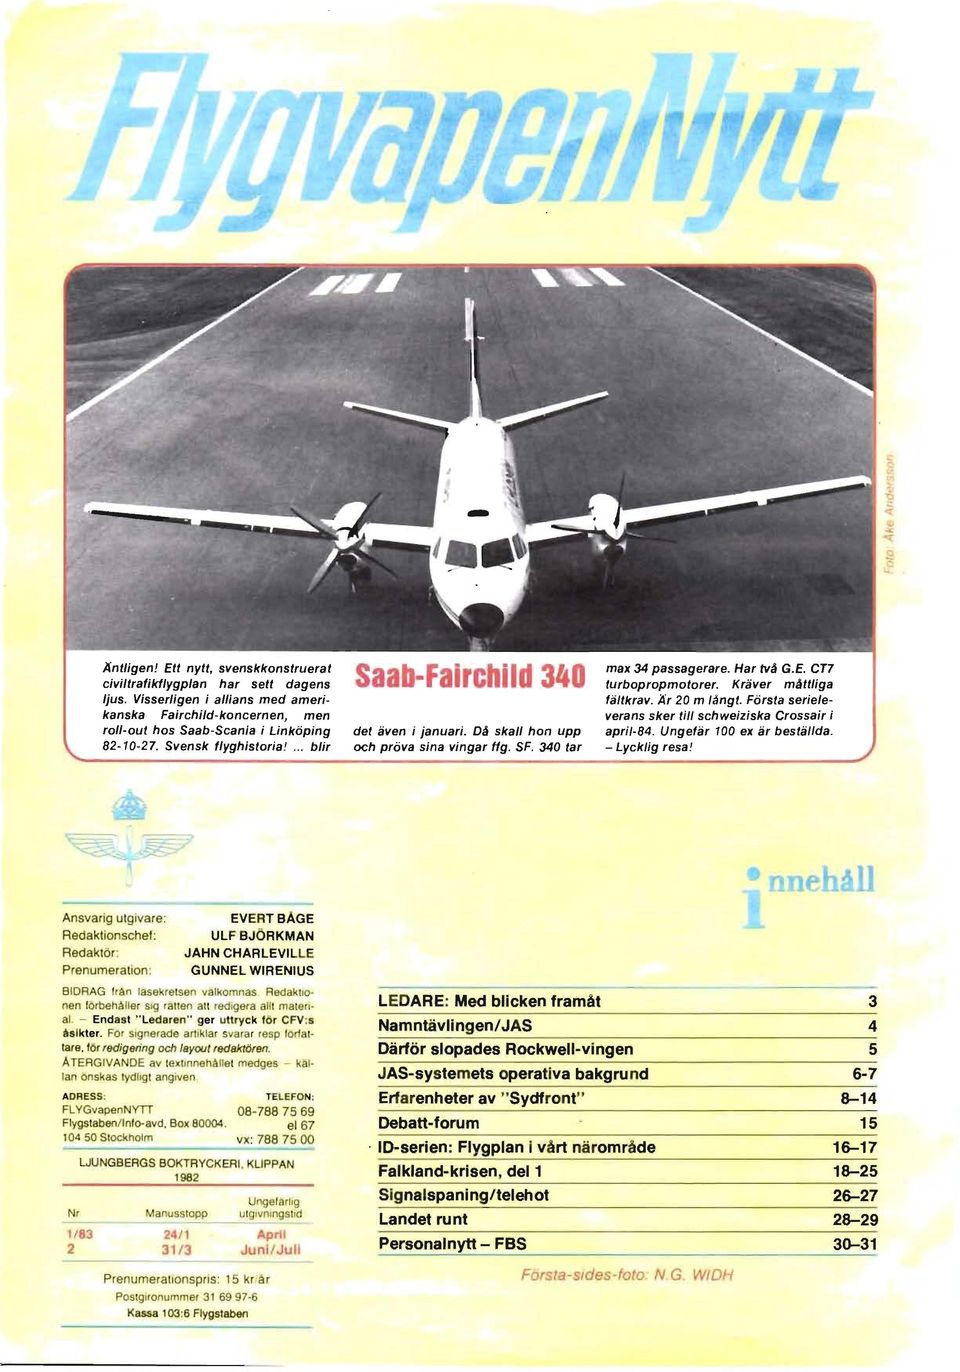 Kräver måttliga fältkrav. Ar 20 m långt. Första serie/everans sker till schweiziska Crossair i april-84. Ungefär 100 ex är beställda.